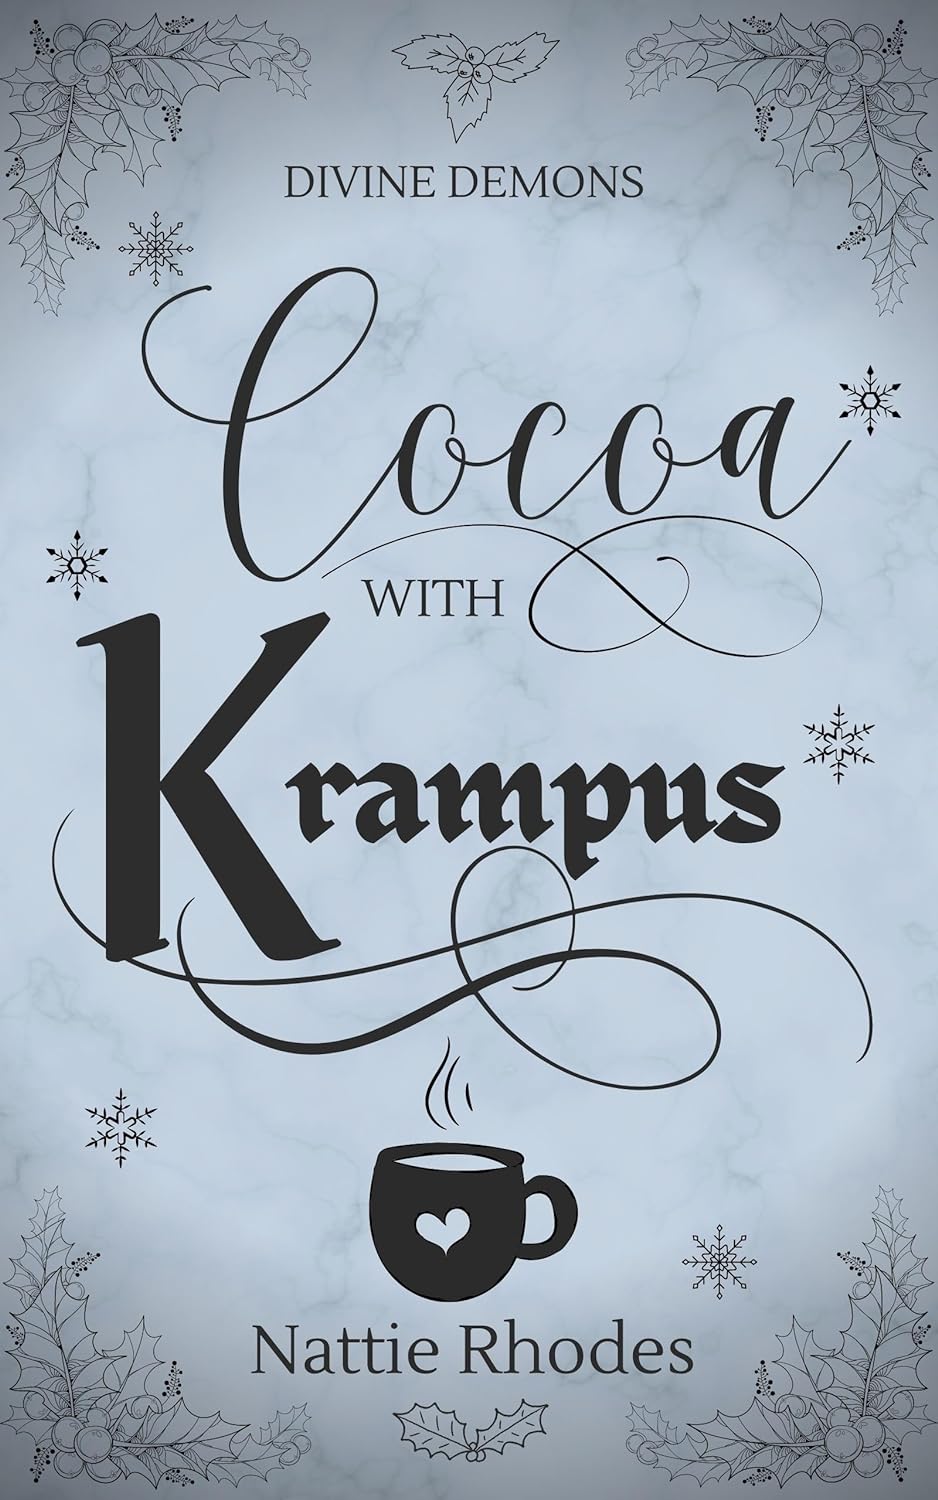 Cocoa with Krampus by Nattie Rhodes